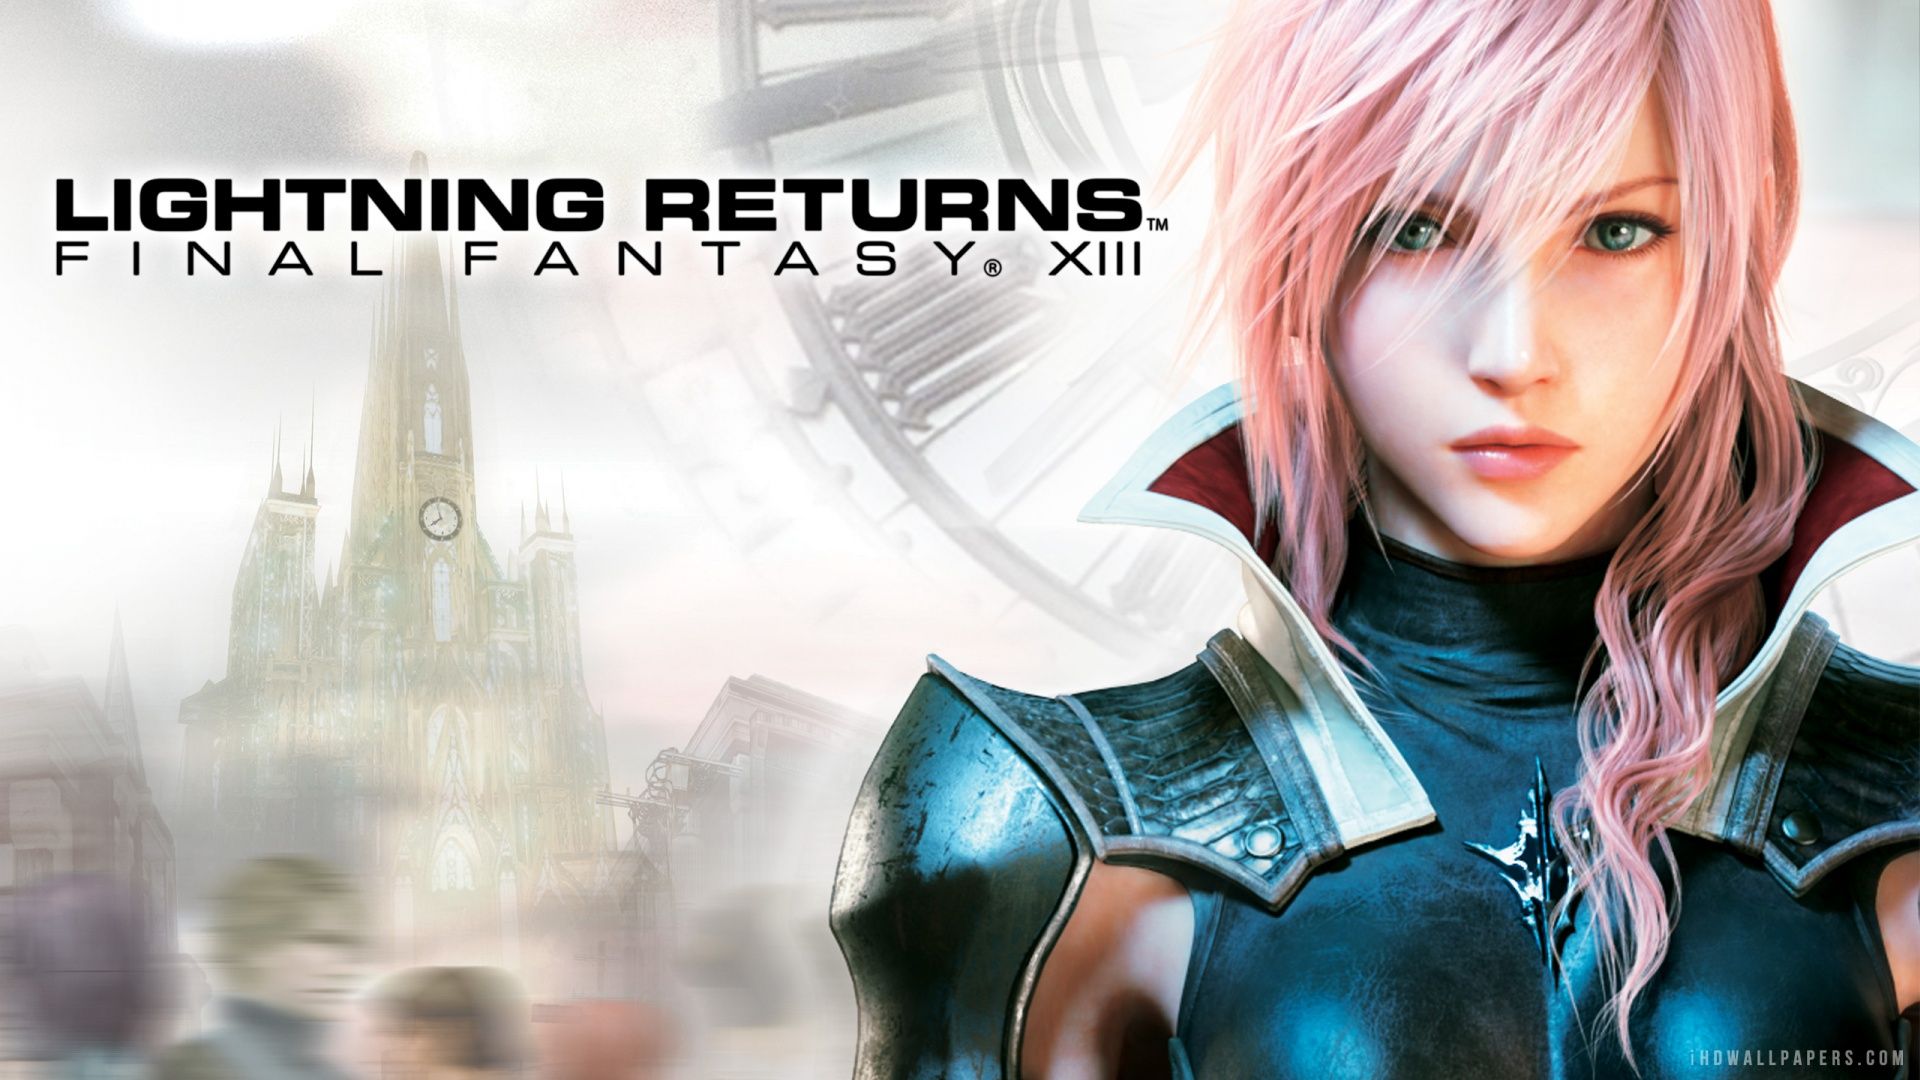 Lightning Returns Final Fantasy XIII 2014 HD Wallpaper - iHD